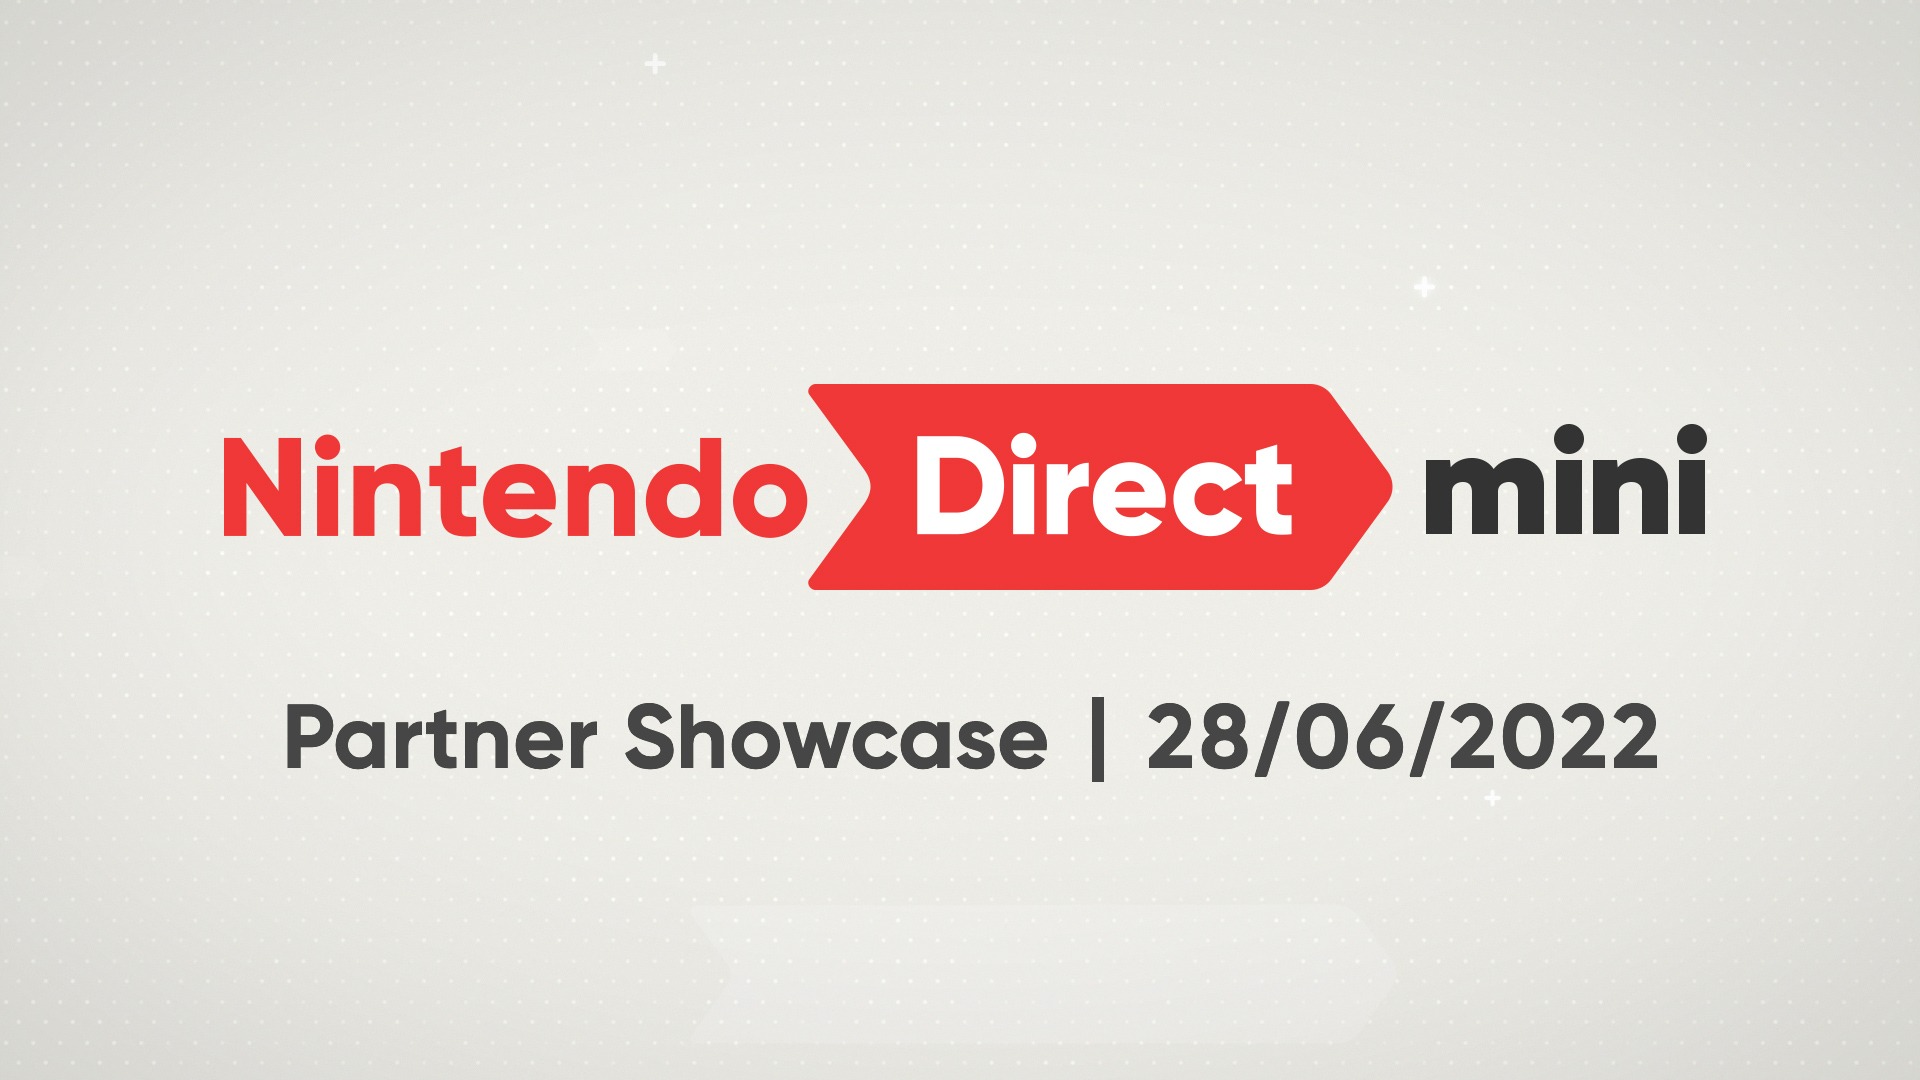 Le Nintendo Direct Mini Partner Showcase est annoncé pour demain, mardi 28 juin.